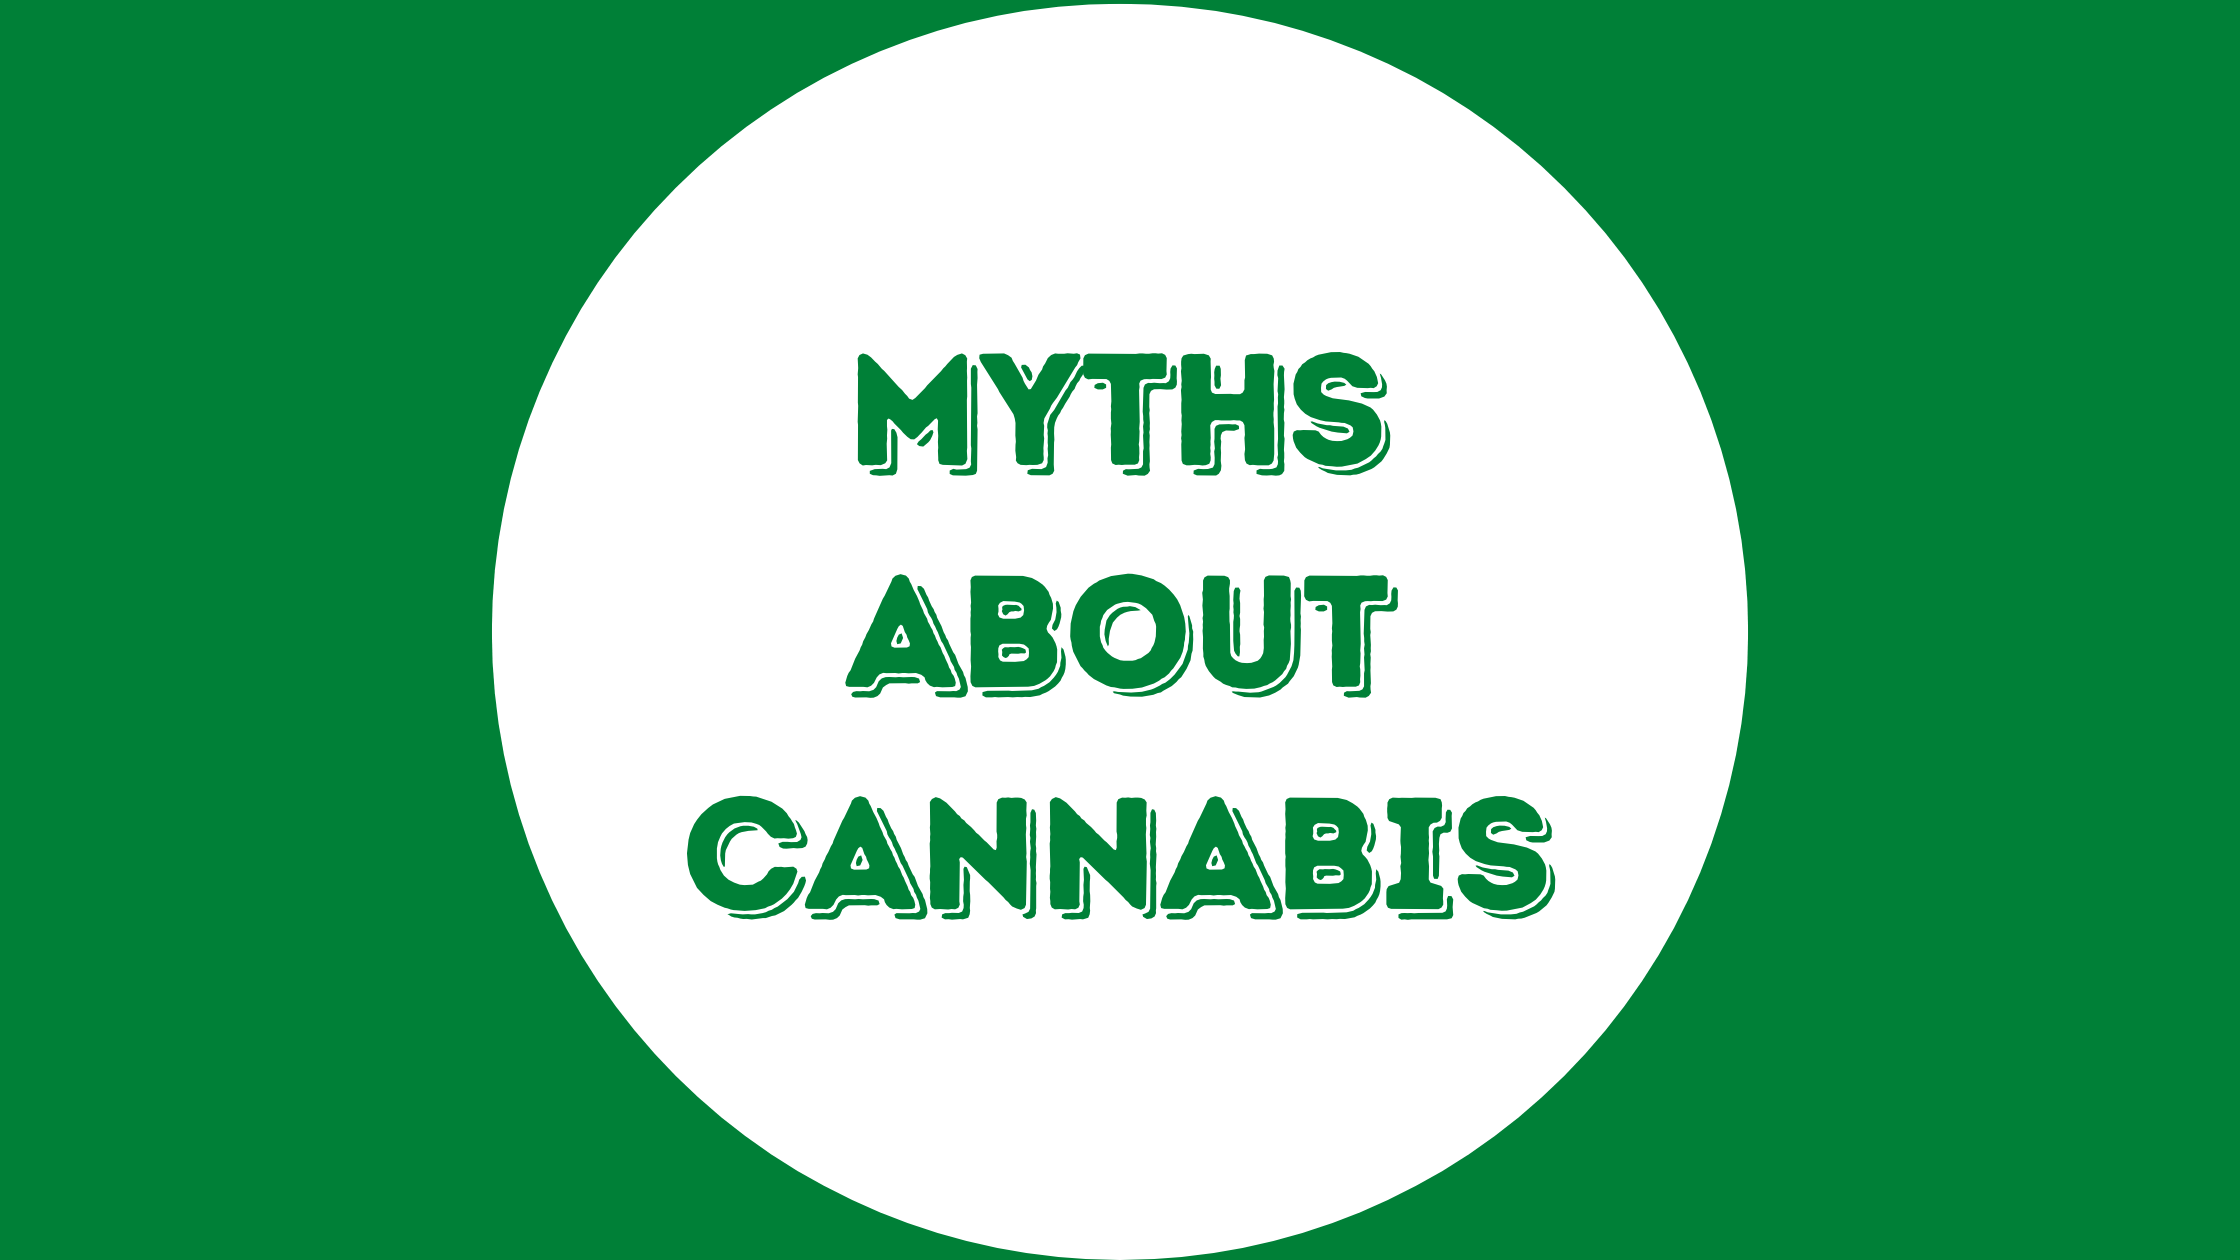 Myths about Cannabis